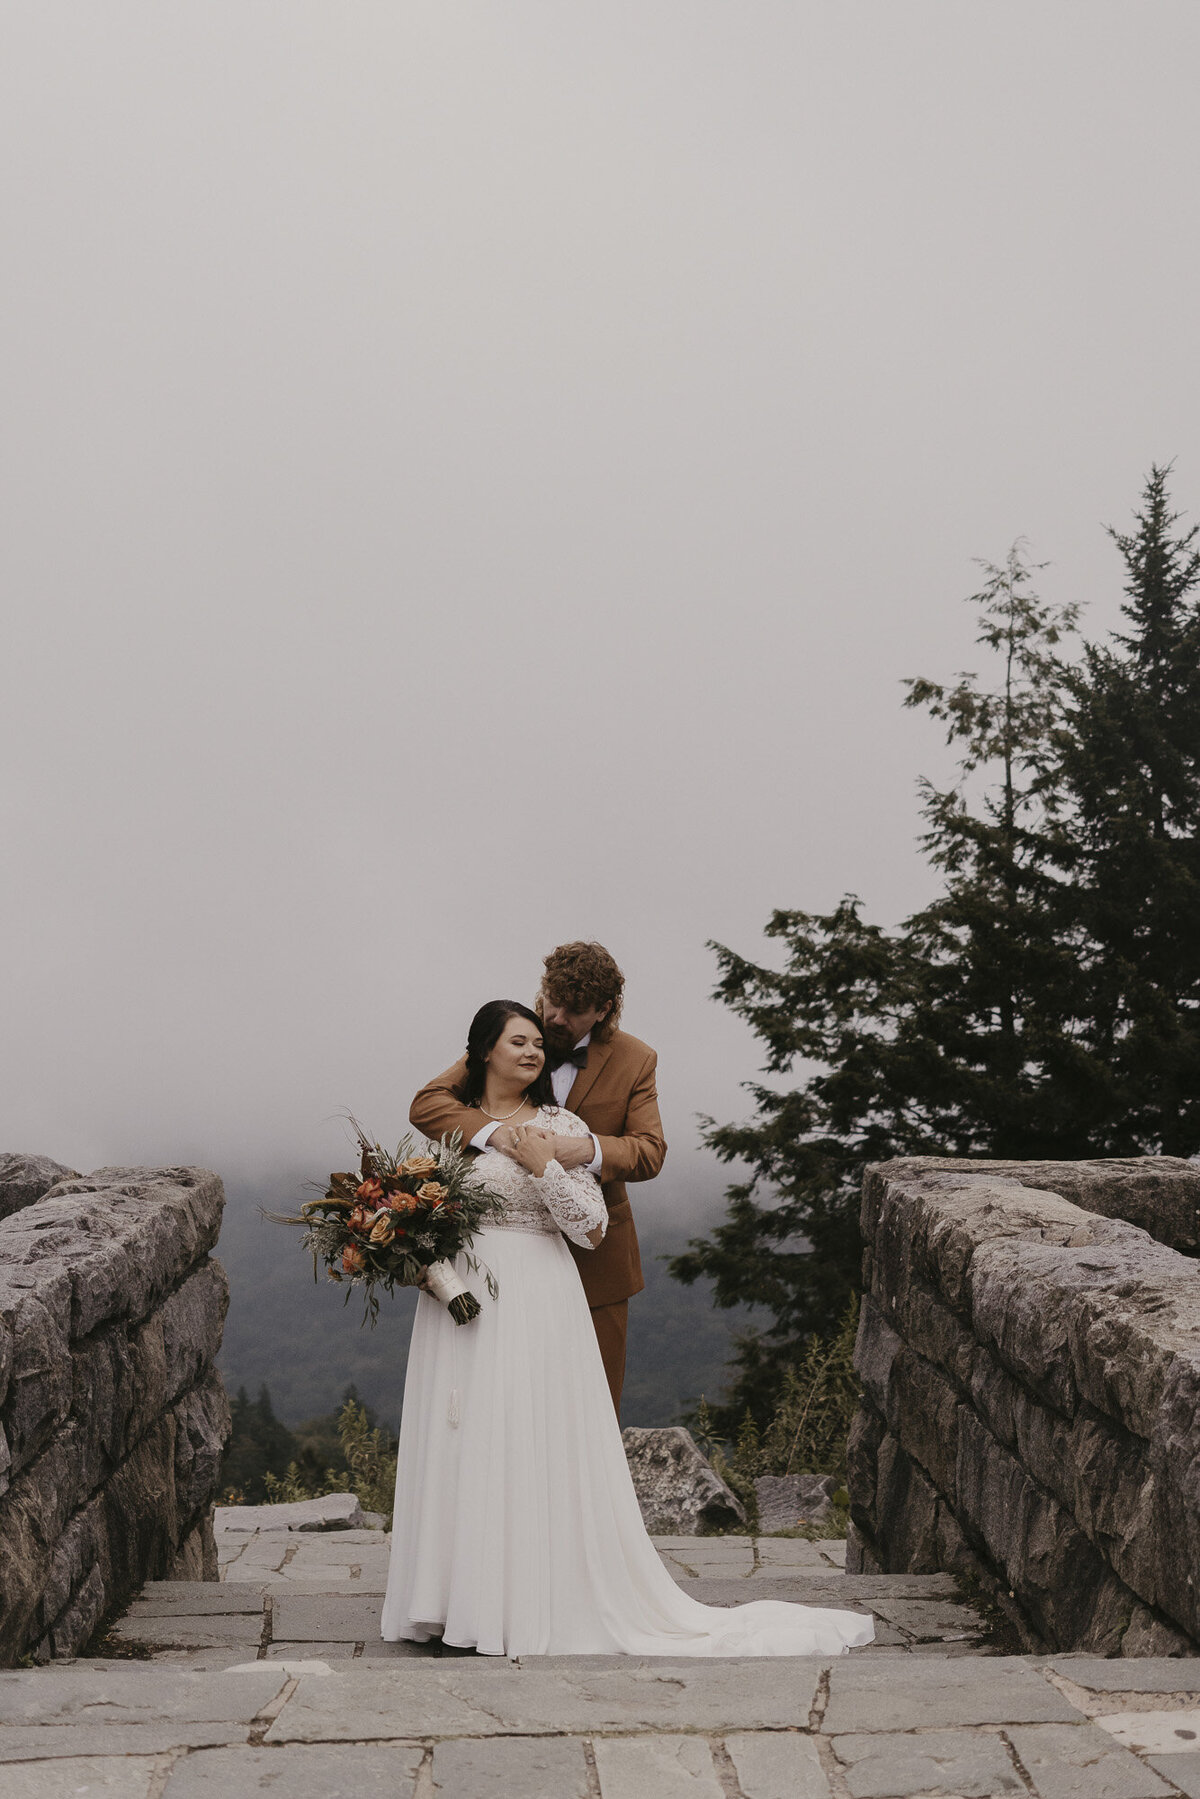 Outdoor mountain wedding